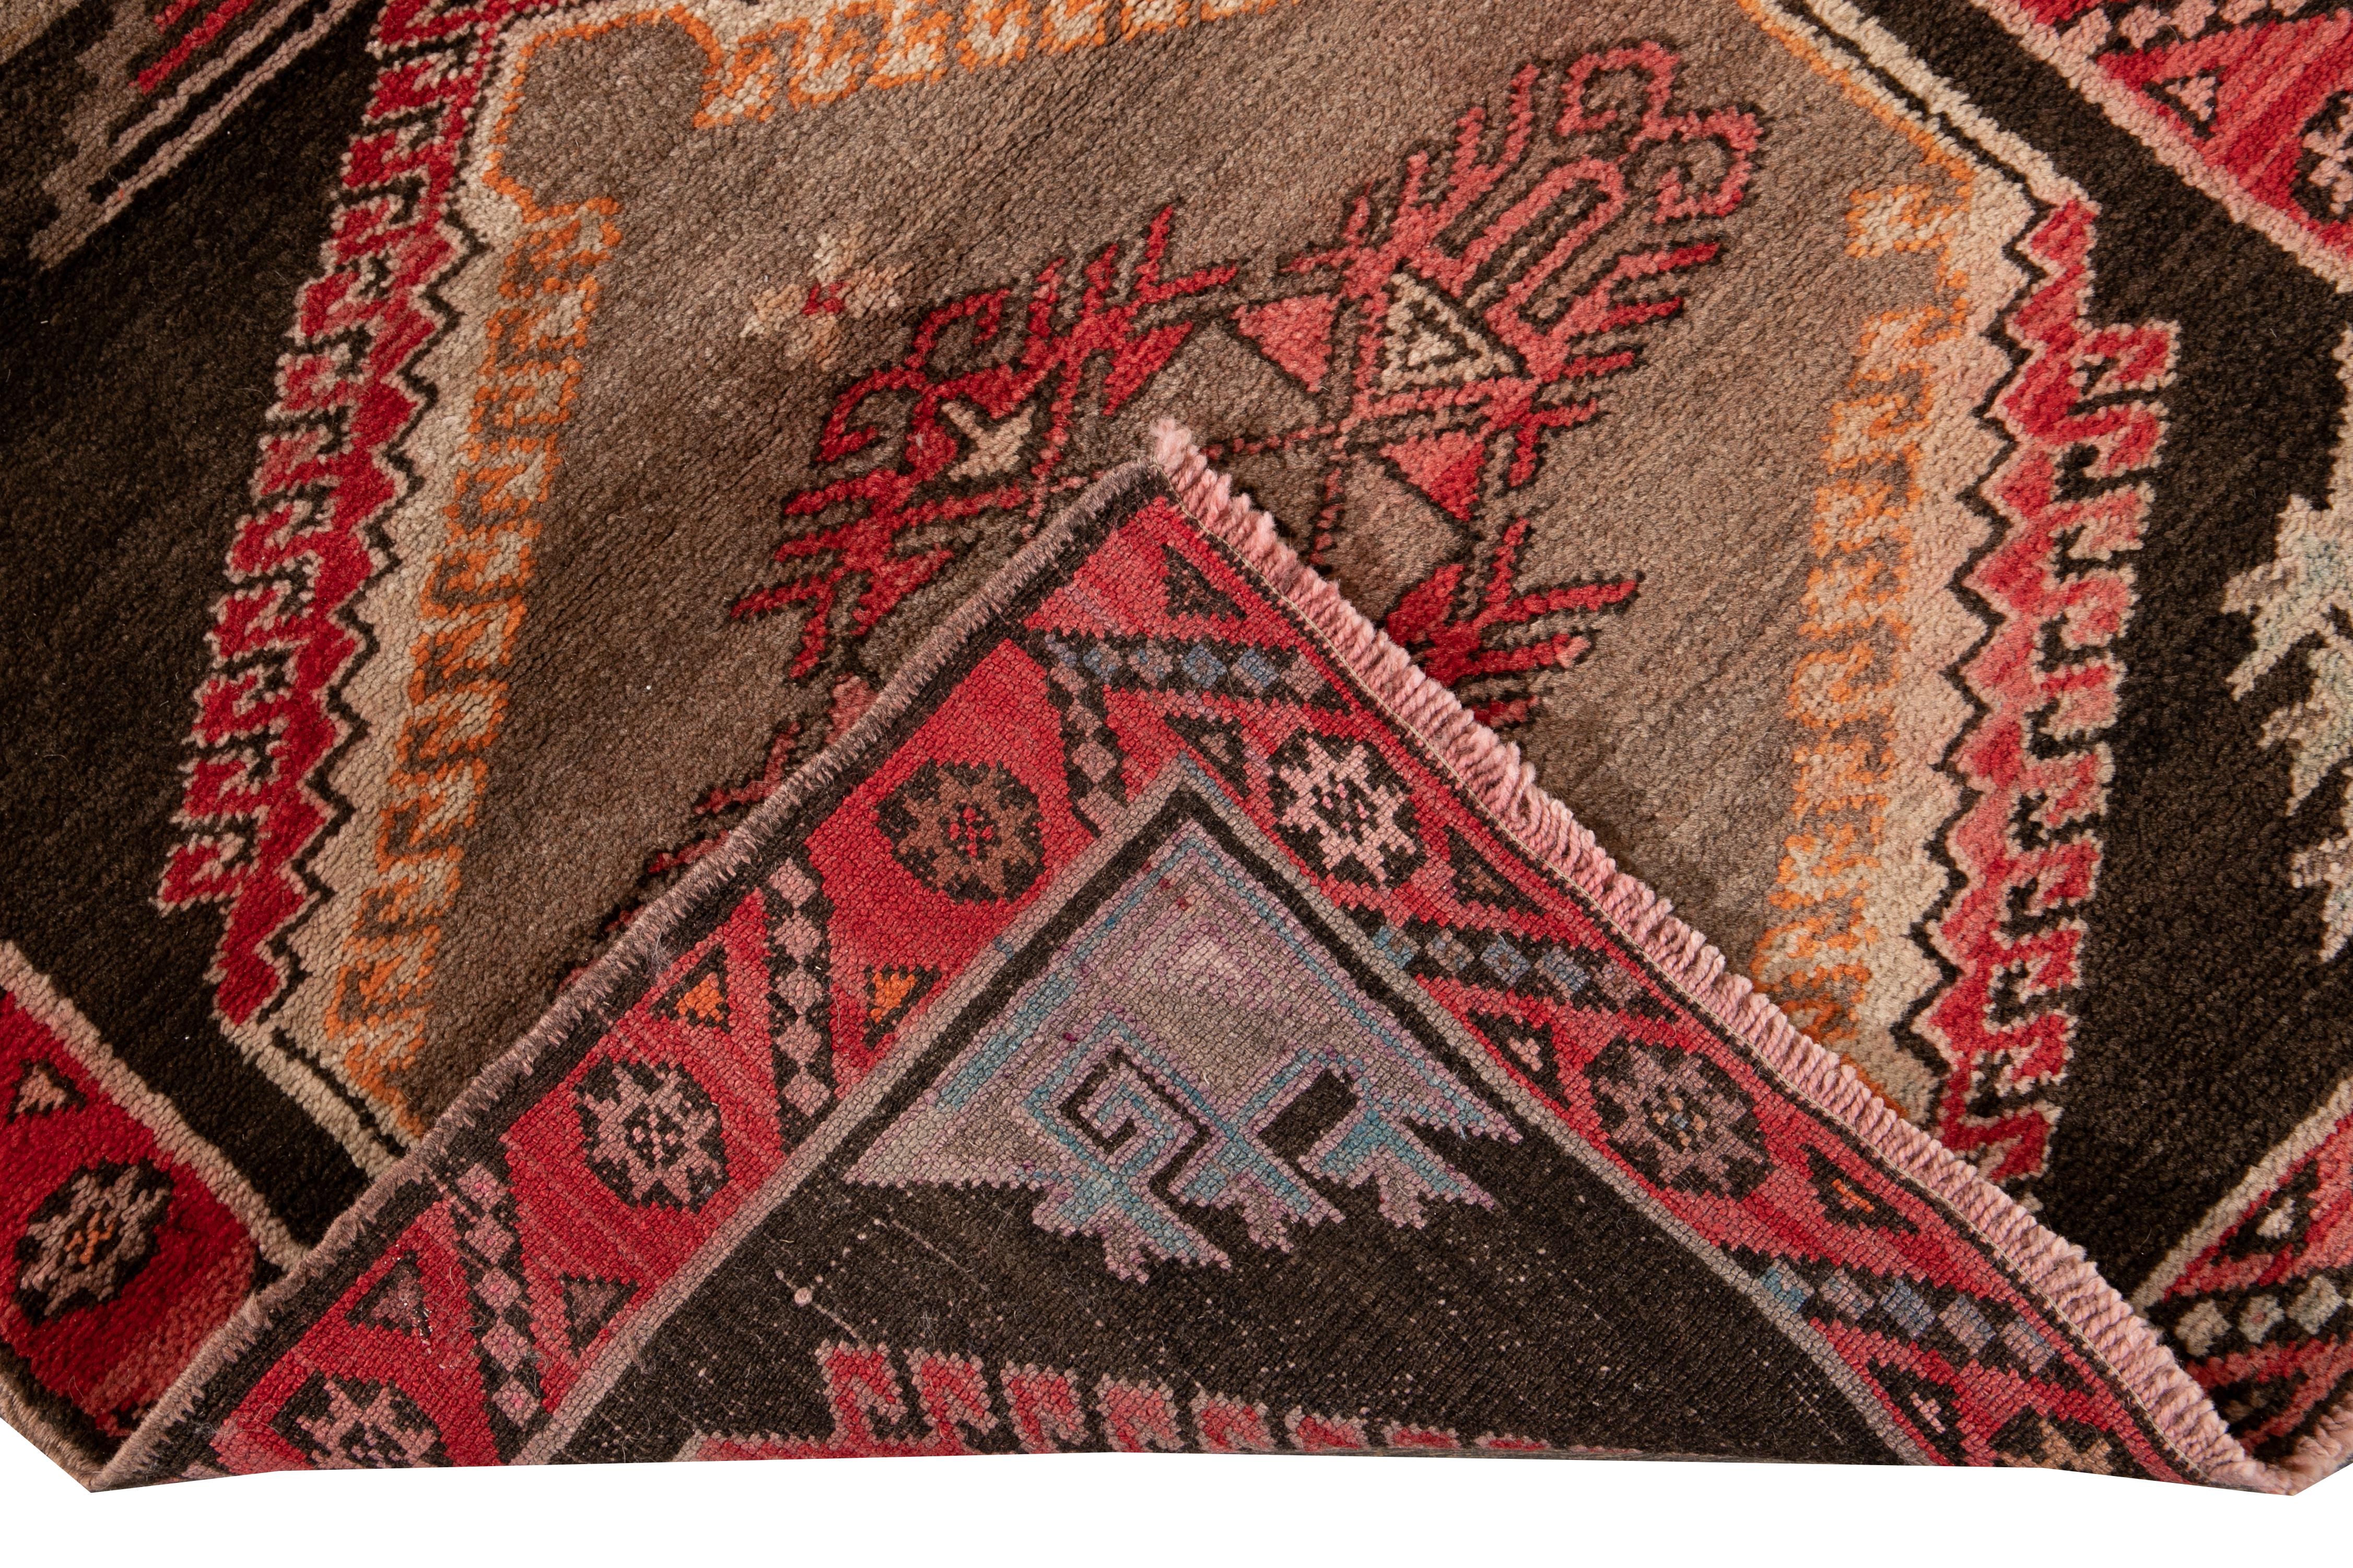 Schöne Vintage malerischen türkischen handgeknüpften Wollteppich mit einem braunen Feld. Dieser türkische Teppich hat einen roten Rahmen und Akzente in Orange und Beige in einem wunderschönen geometrischen Bildmuster.

Dieser Teppich misst 3' 3